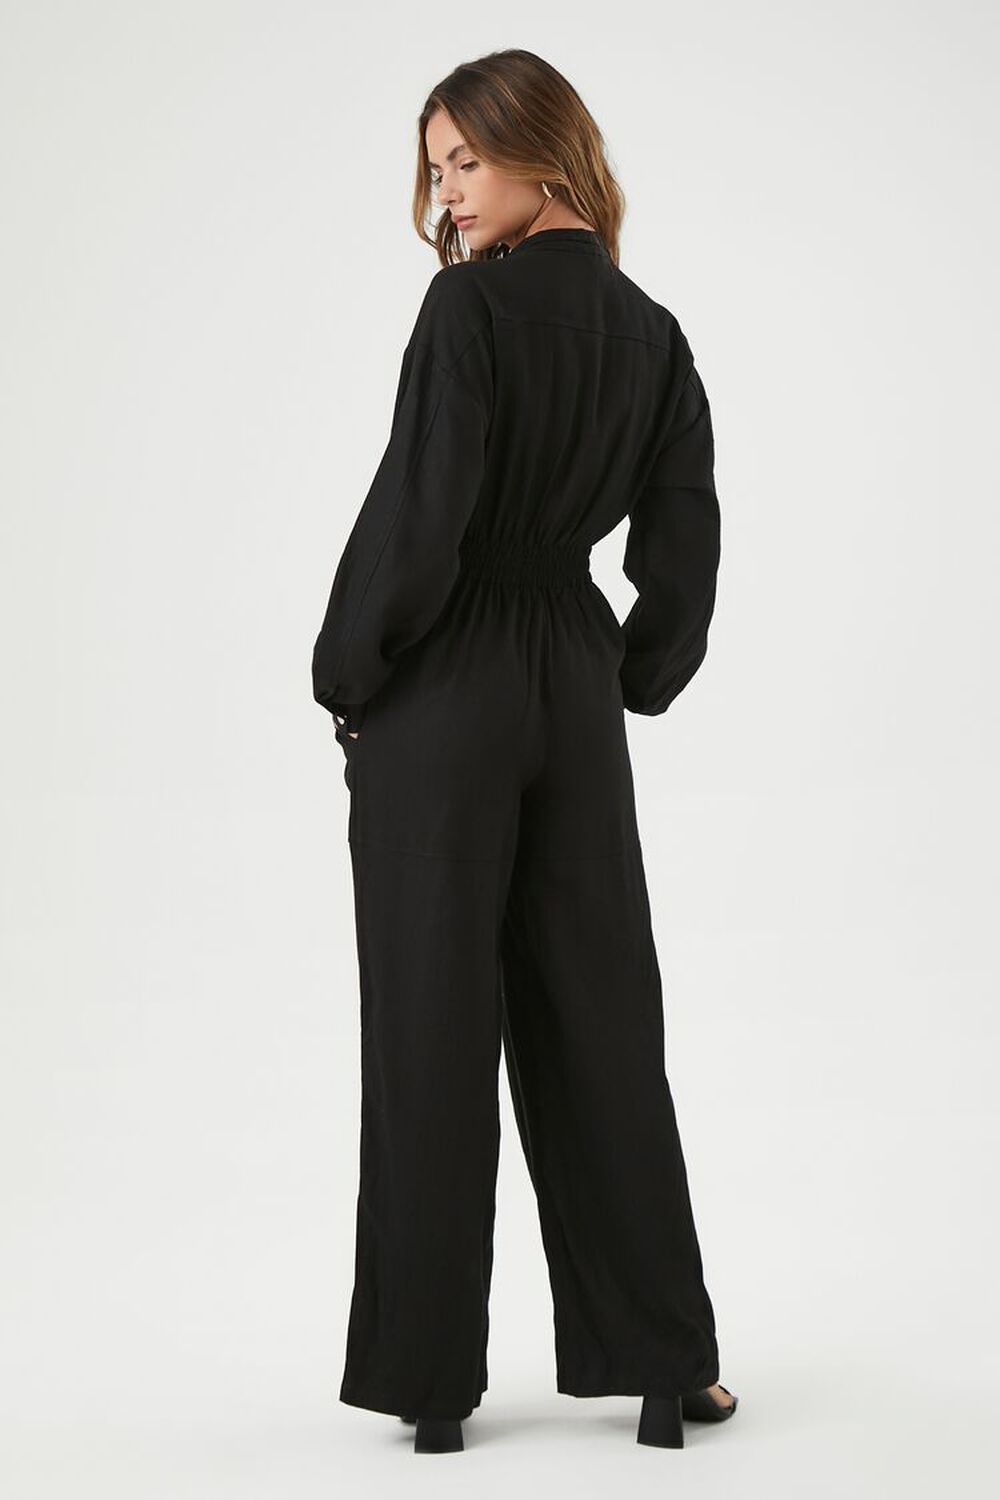 BLACK Linen-Blend Notched Jumpsuit, image 3